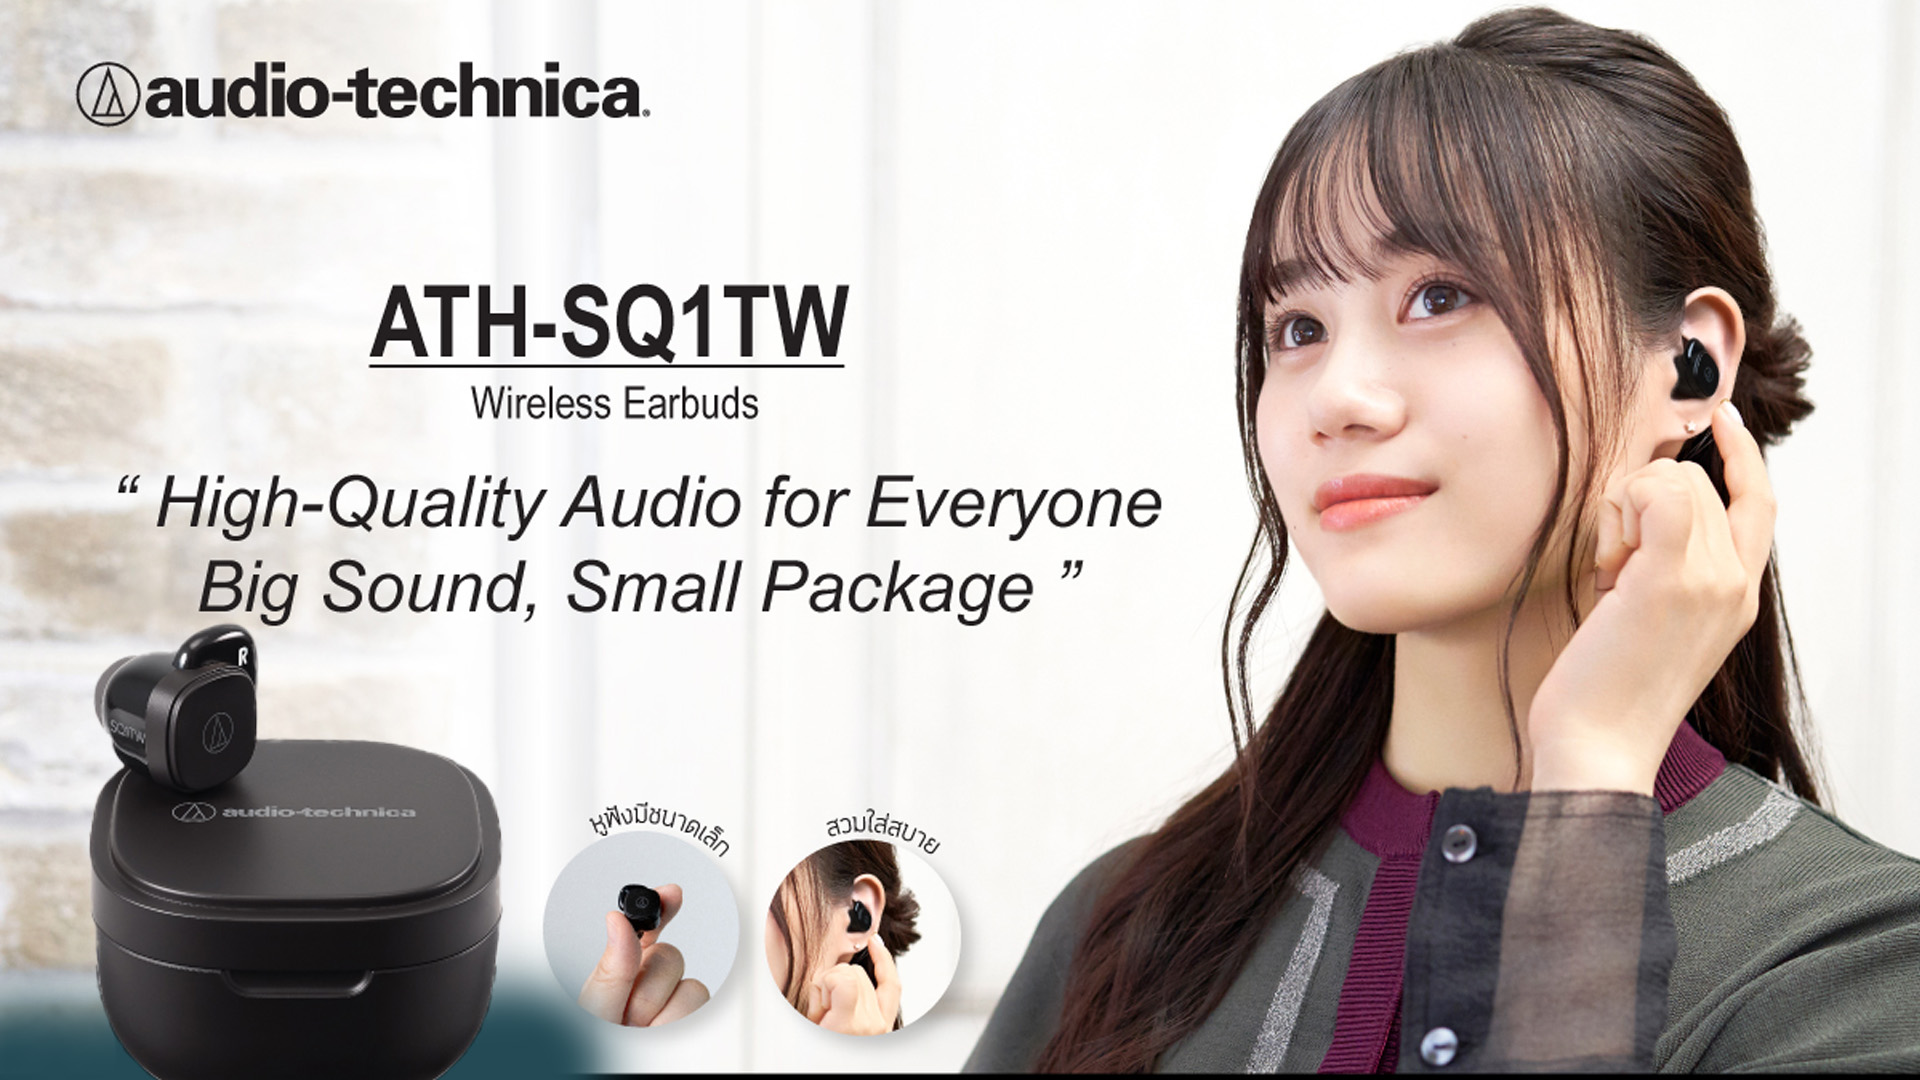 อาร์ทีบีฯ ส่งหูฟัง TWS รุ่น ATH-SQ1TW จากแบรนด์ Audio-Technica ดีไซน์สุดเท่ พร้อมเทคโนโลยีเสียงสุดล้ำ